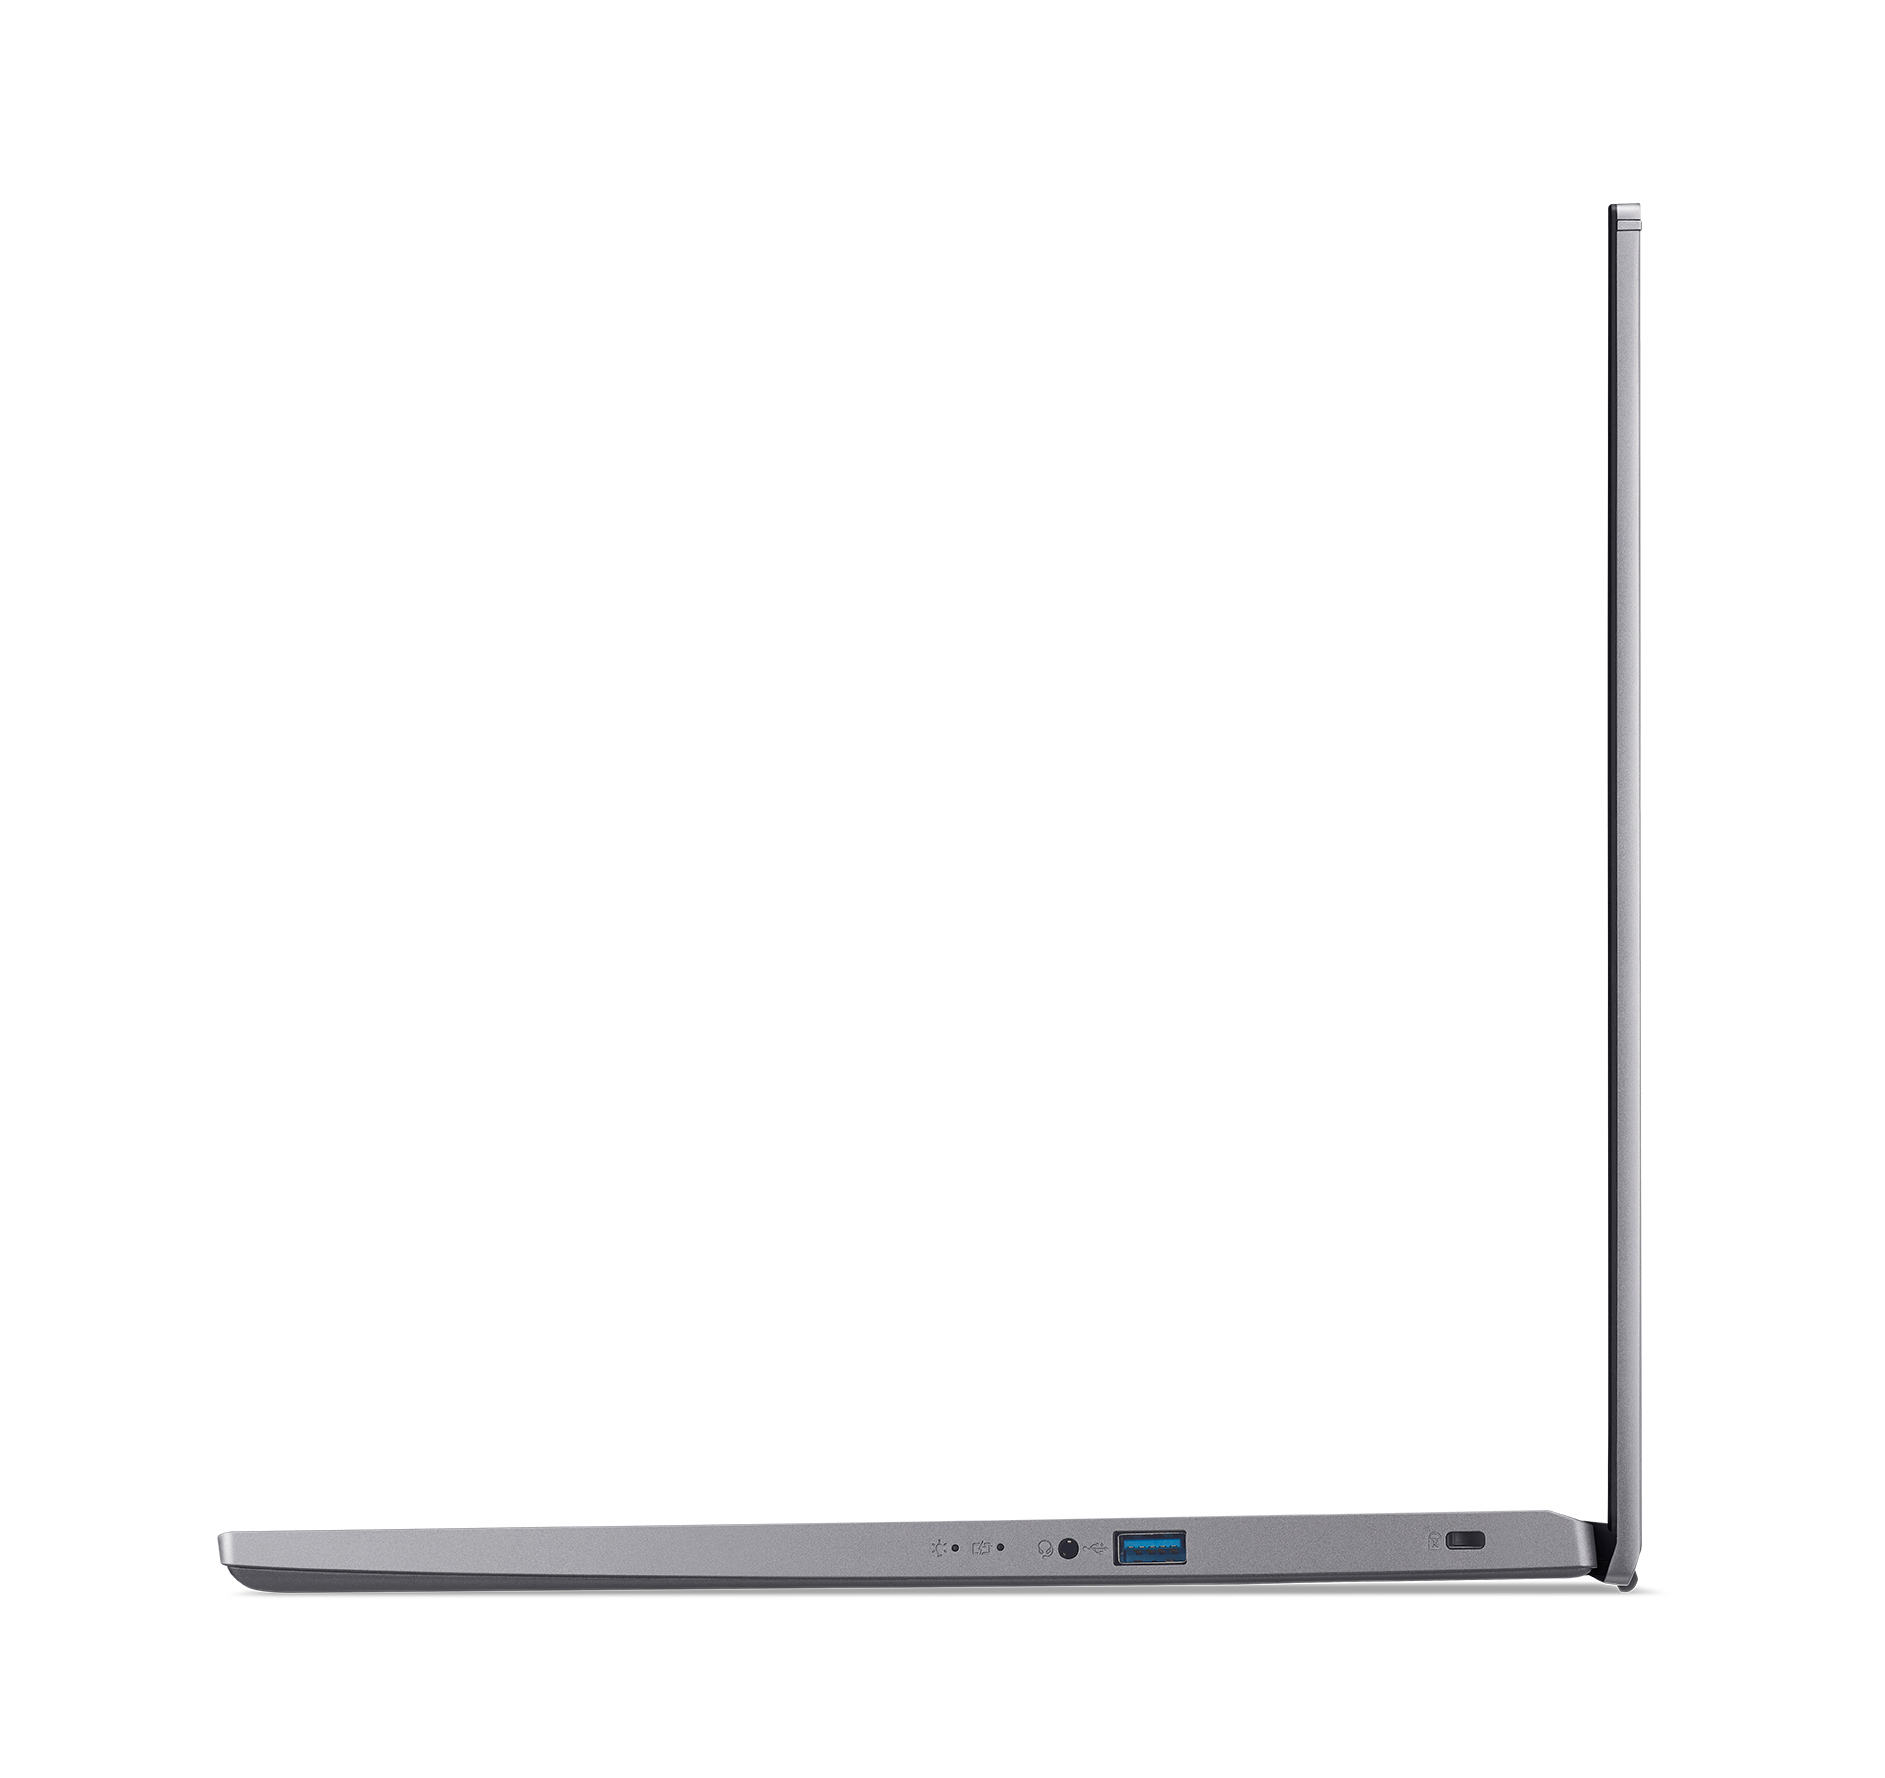 Acer Aspire 5 Pro | A517-53G-701D